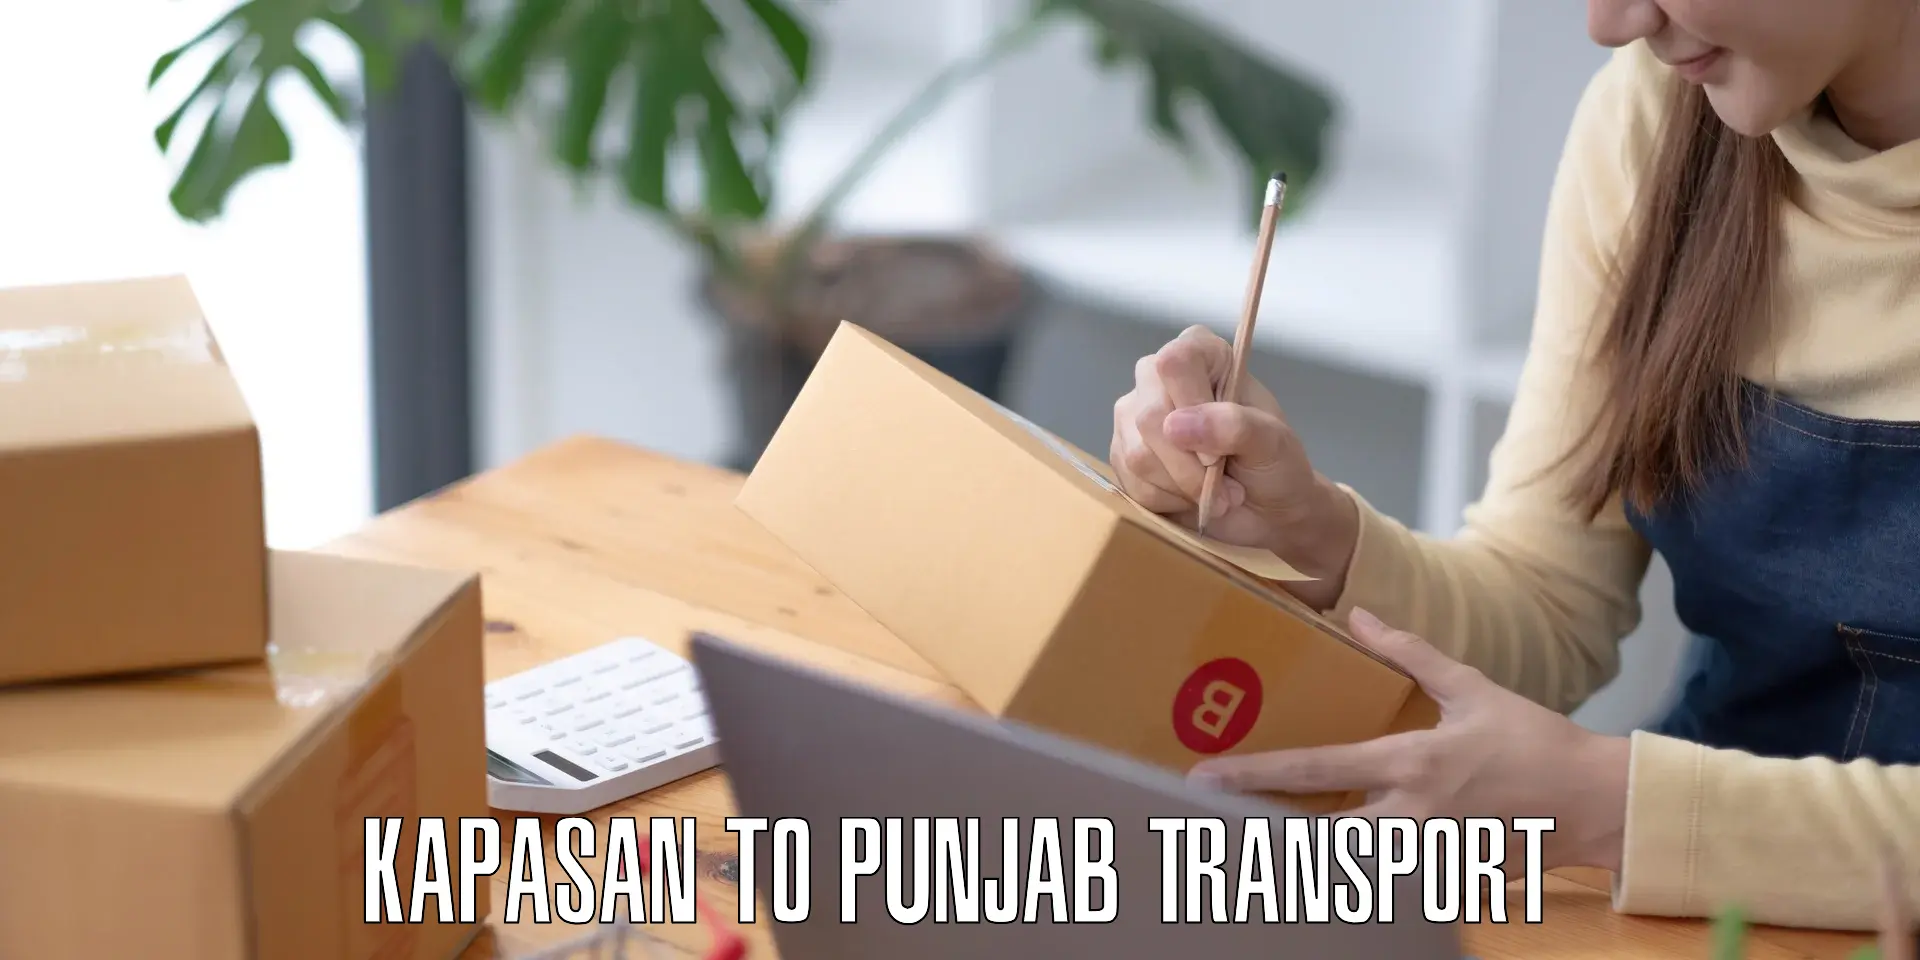 Pick up transport service Kapasan to Punjab